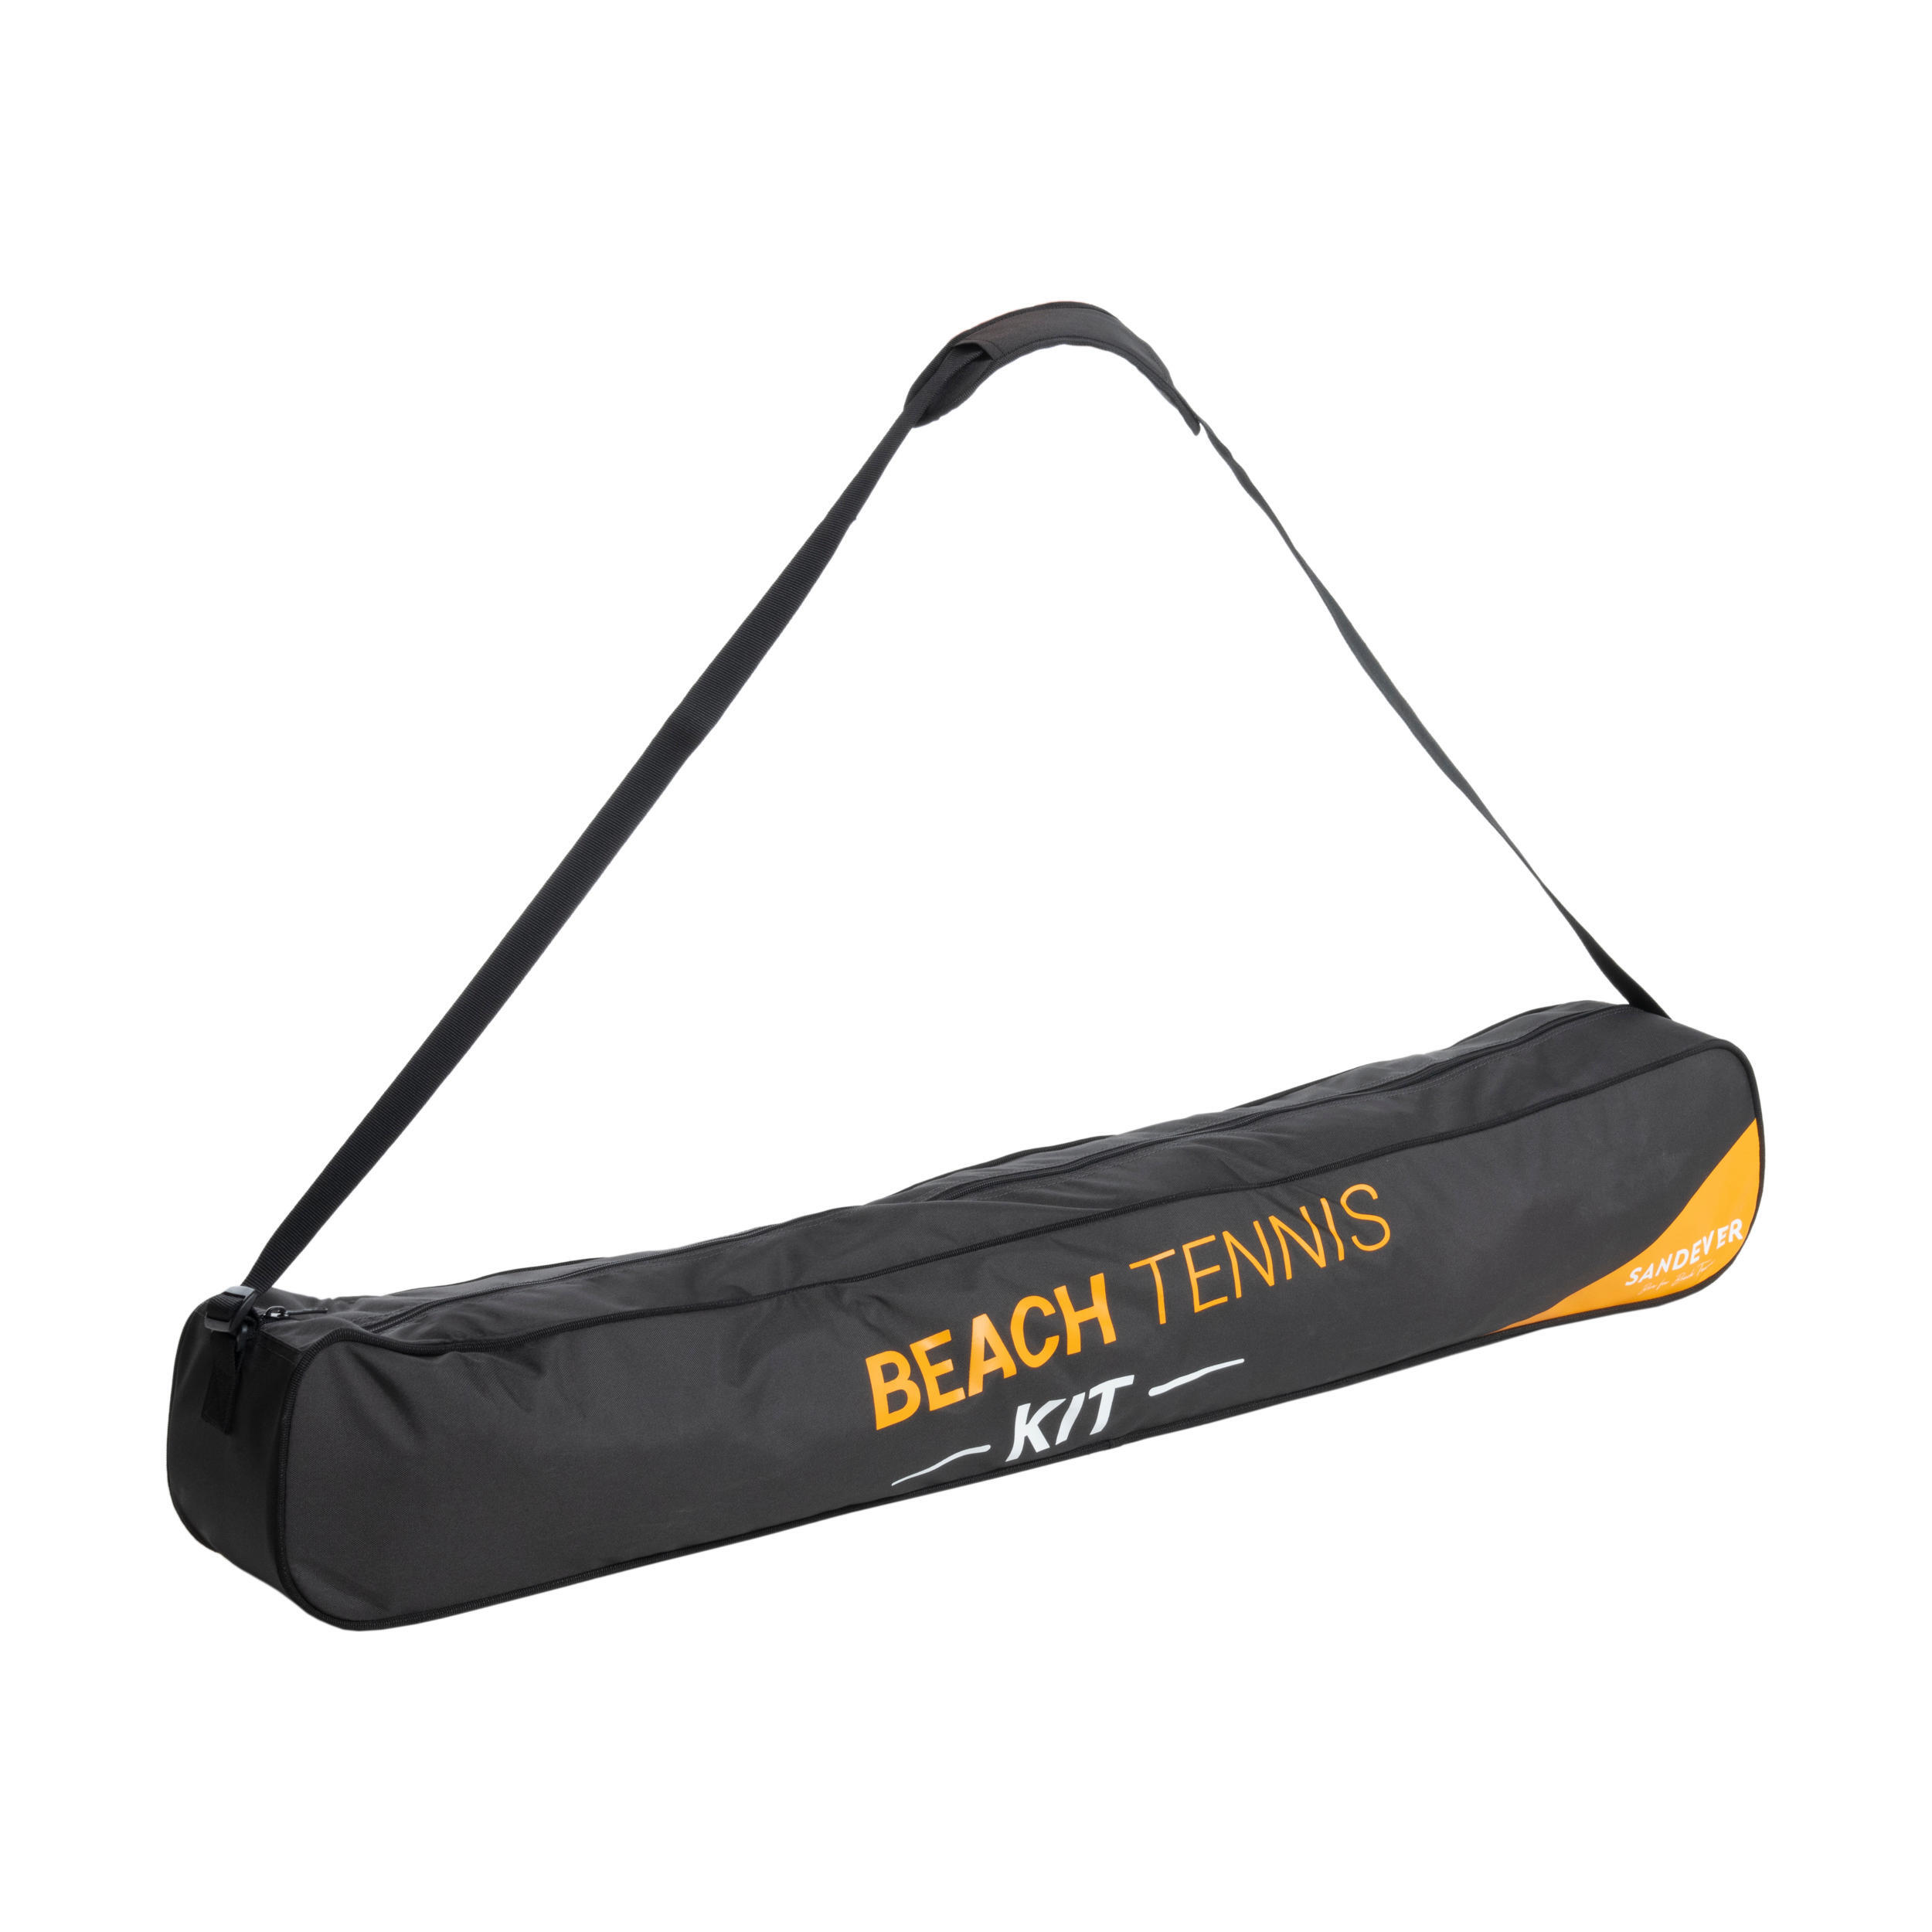 Beach Tennis Kit BTK 500 - Net and Posts 2/8